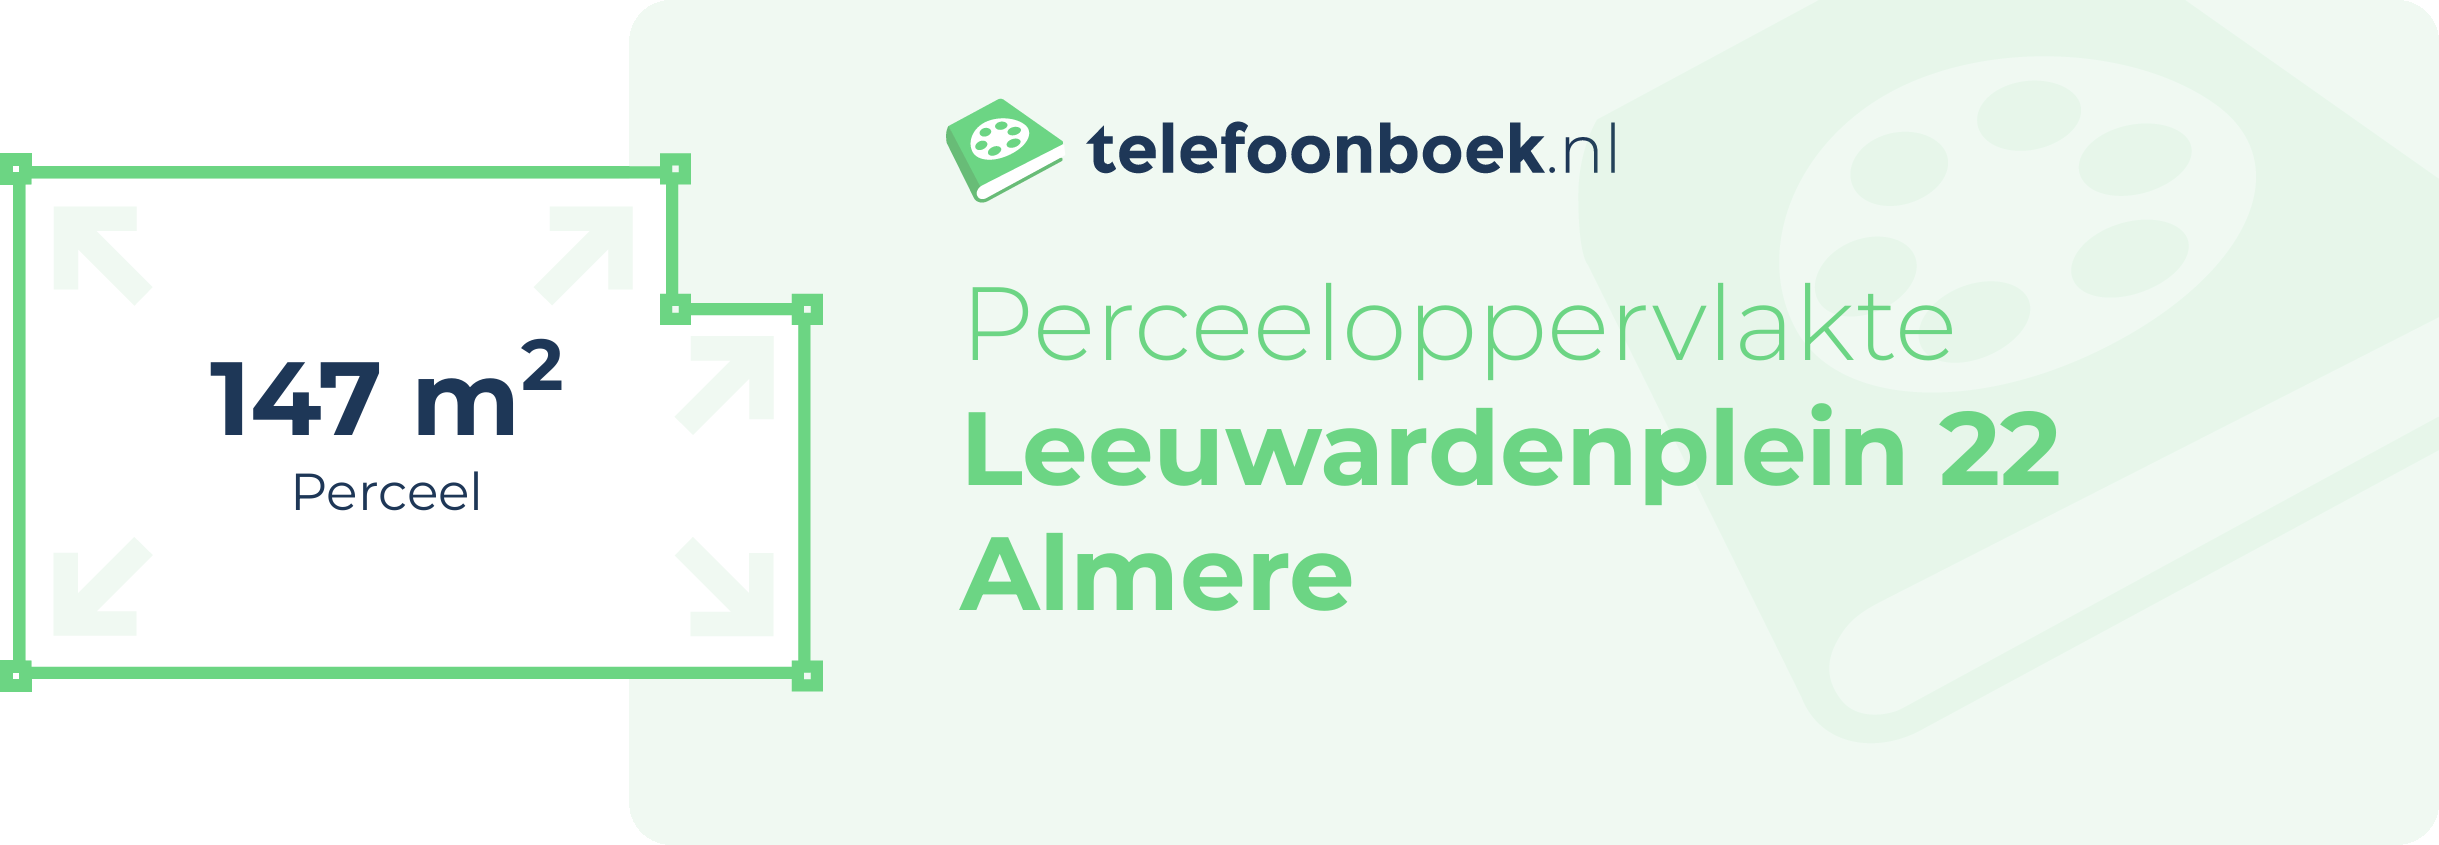 Perceeloppervlakte Leeuwardenplein 22 Almere